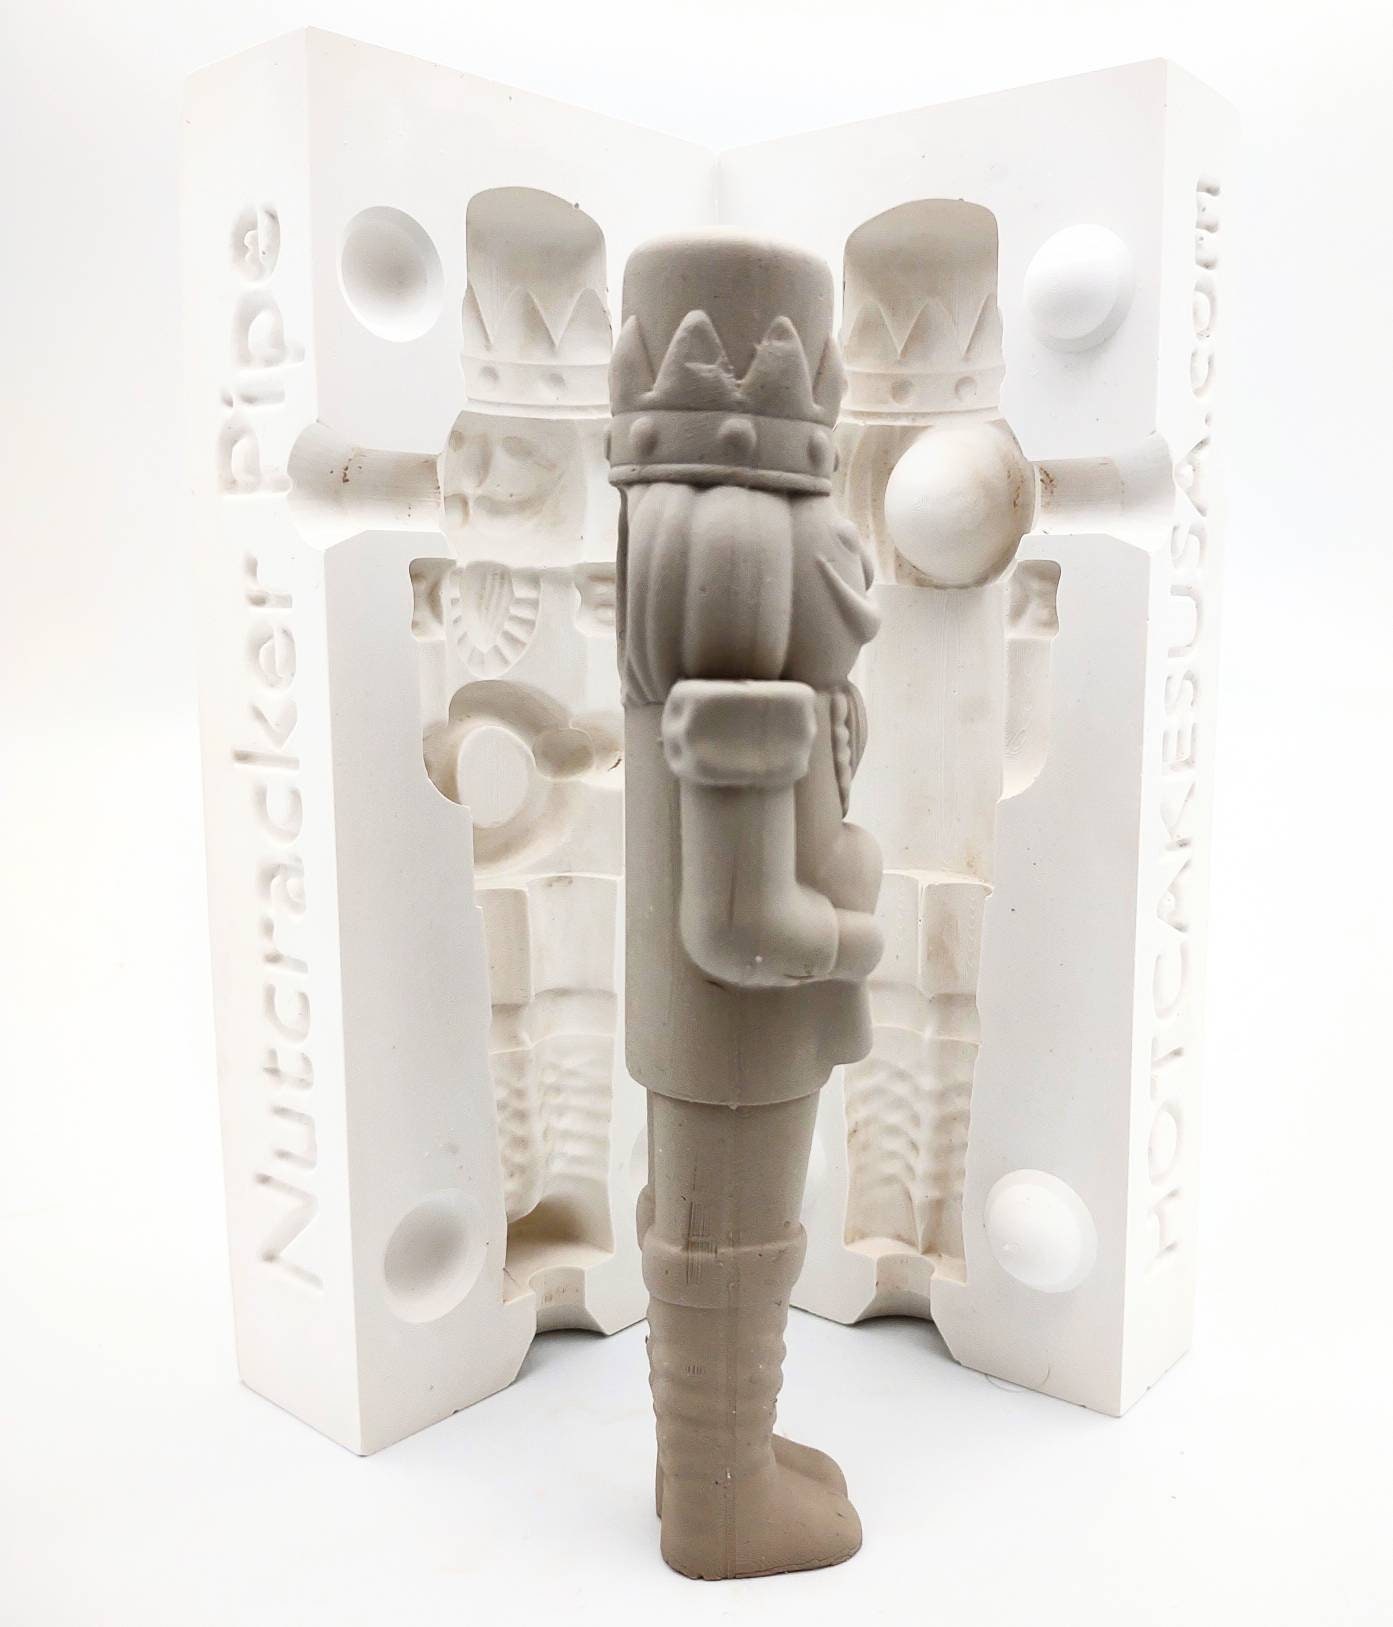 Nutcracker Pipe Ceramic Slip Casting Plaster Mold 